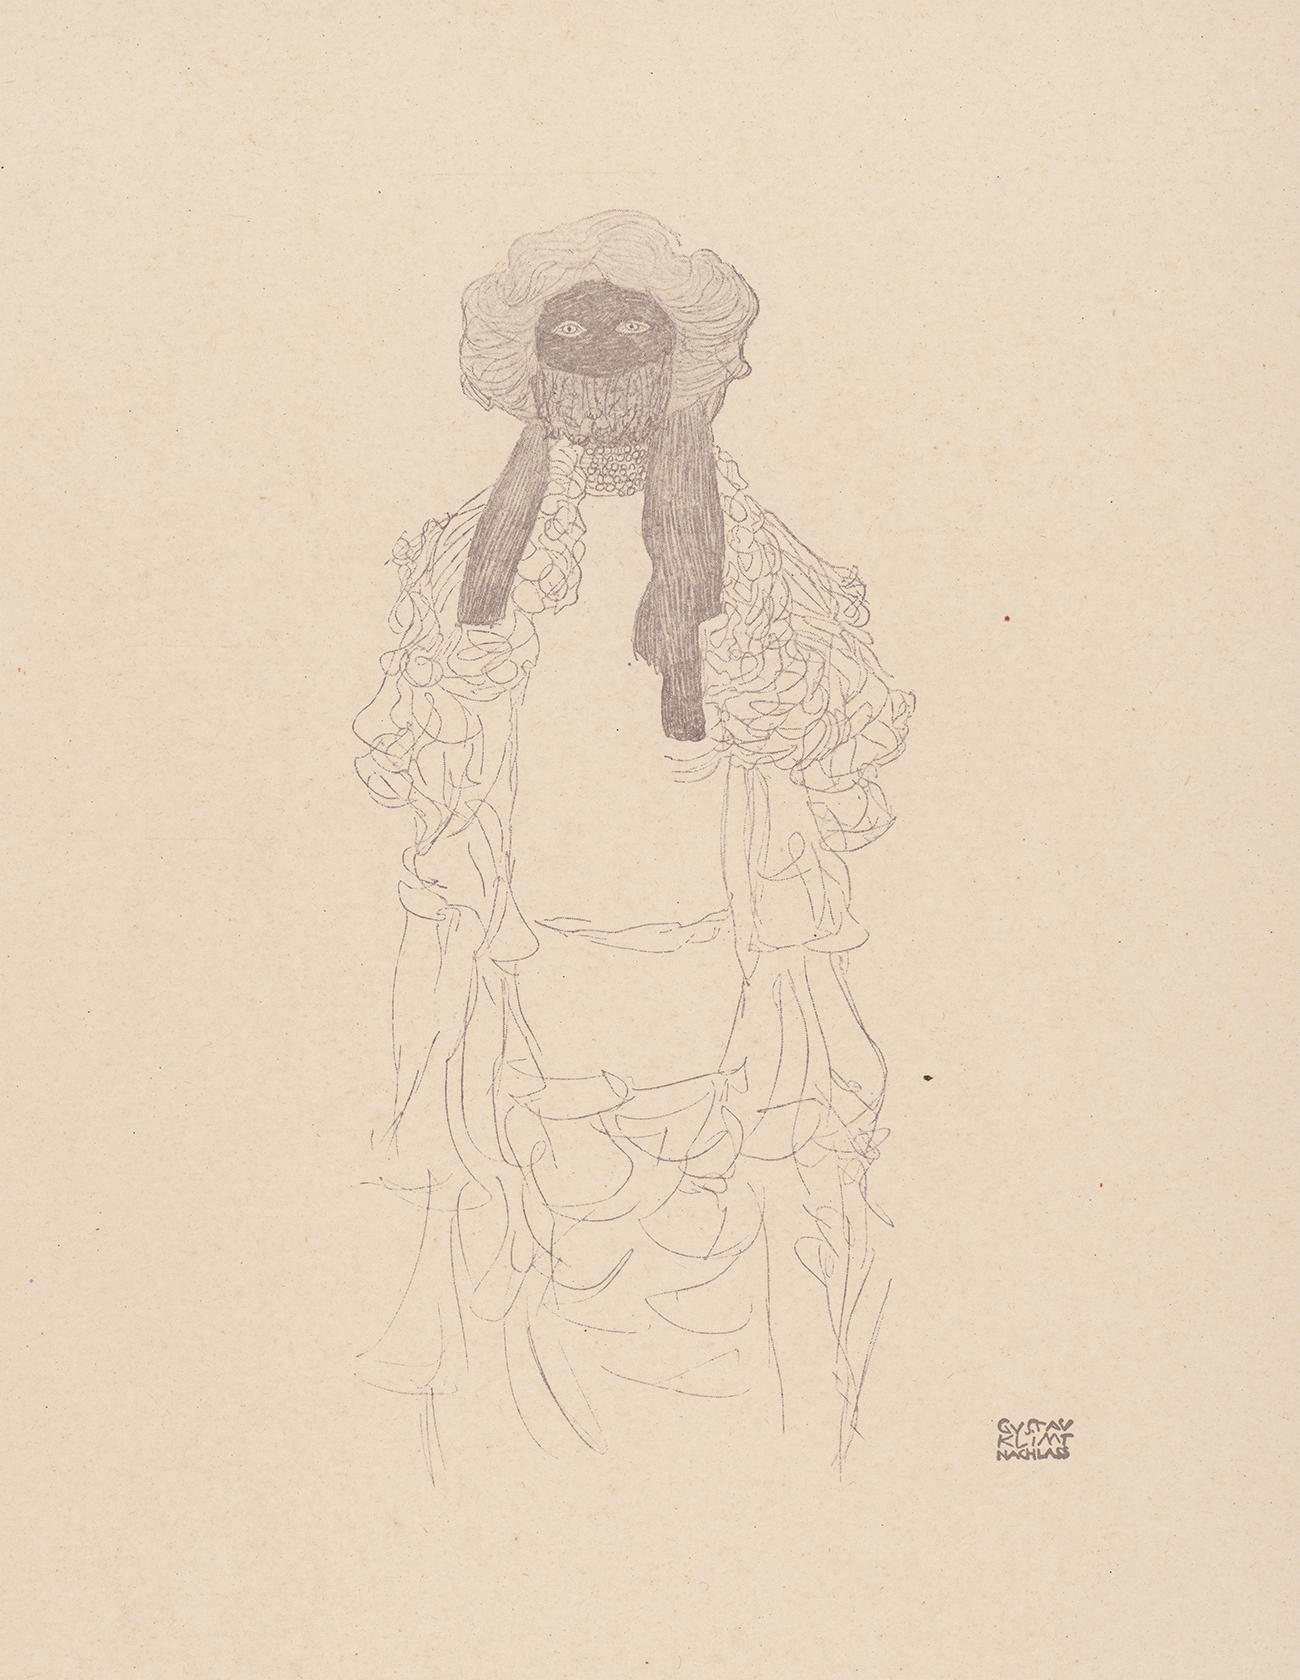 Woman in scarf, Gustav Klimt Handzeichnungen (Sketch), Thyrsos Verlag, 1922 - Print by (after) Gustav Klimt